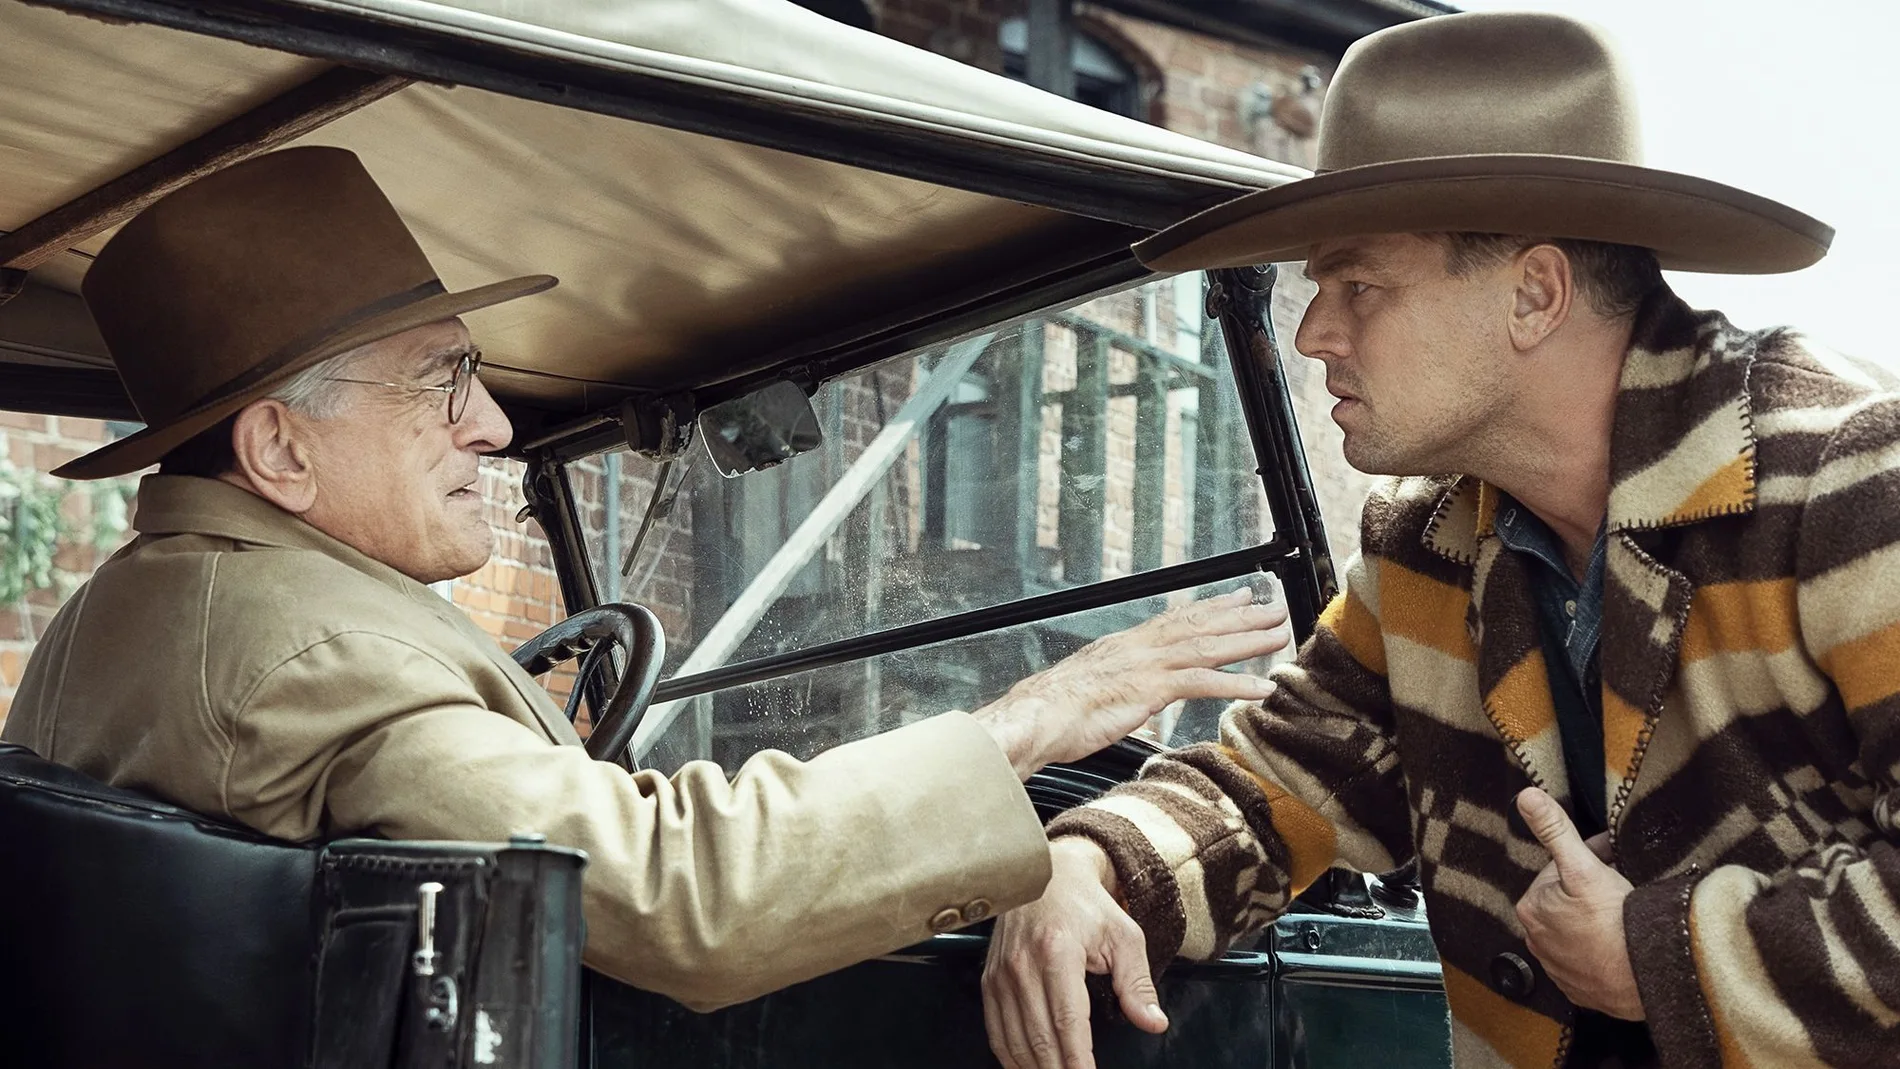 Robert De Niro y Leonardo DiCaprio vuelven a coincidir en la pantalla bajo las órdenes de Scorsese